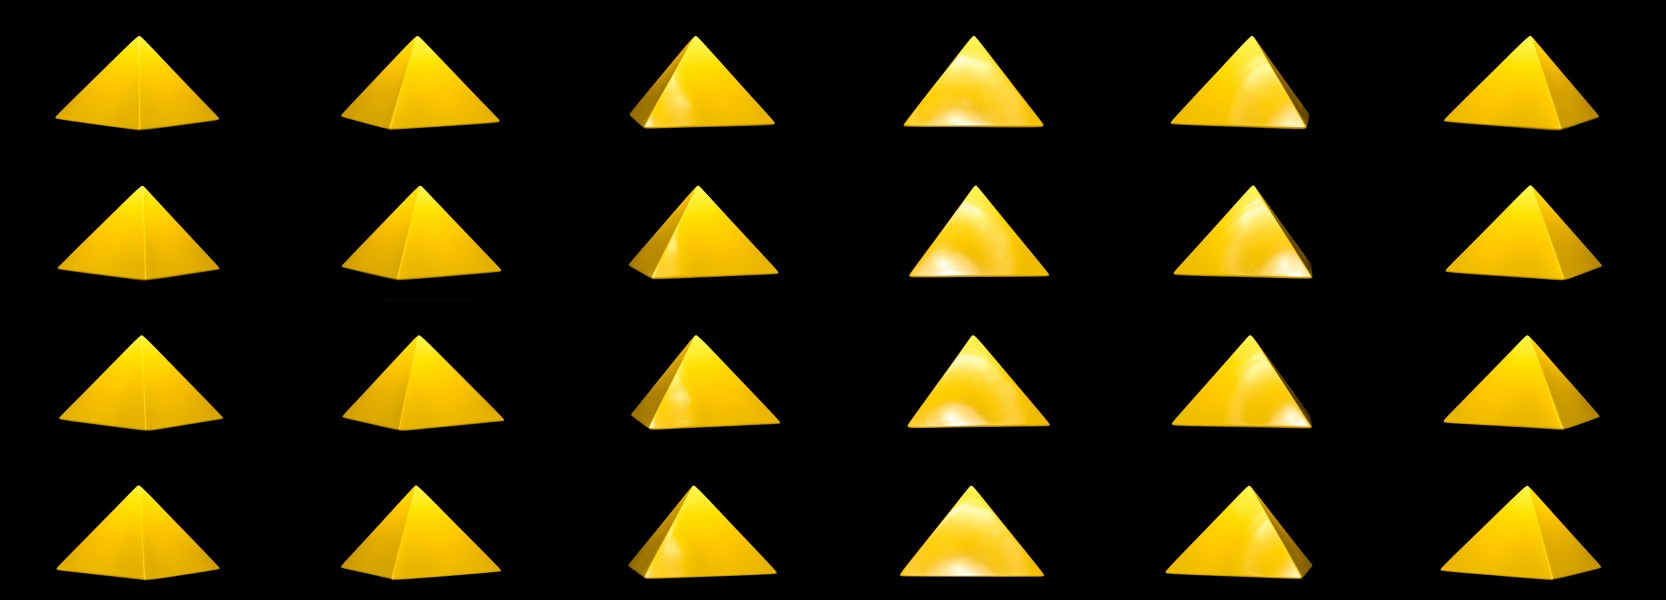 Pirâmide quadrada